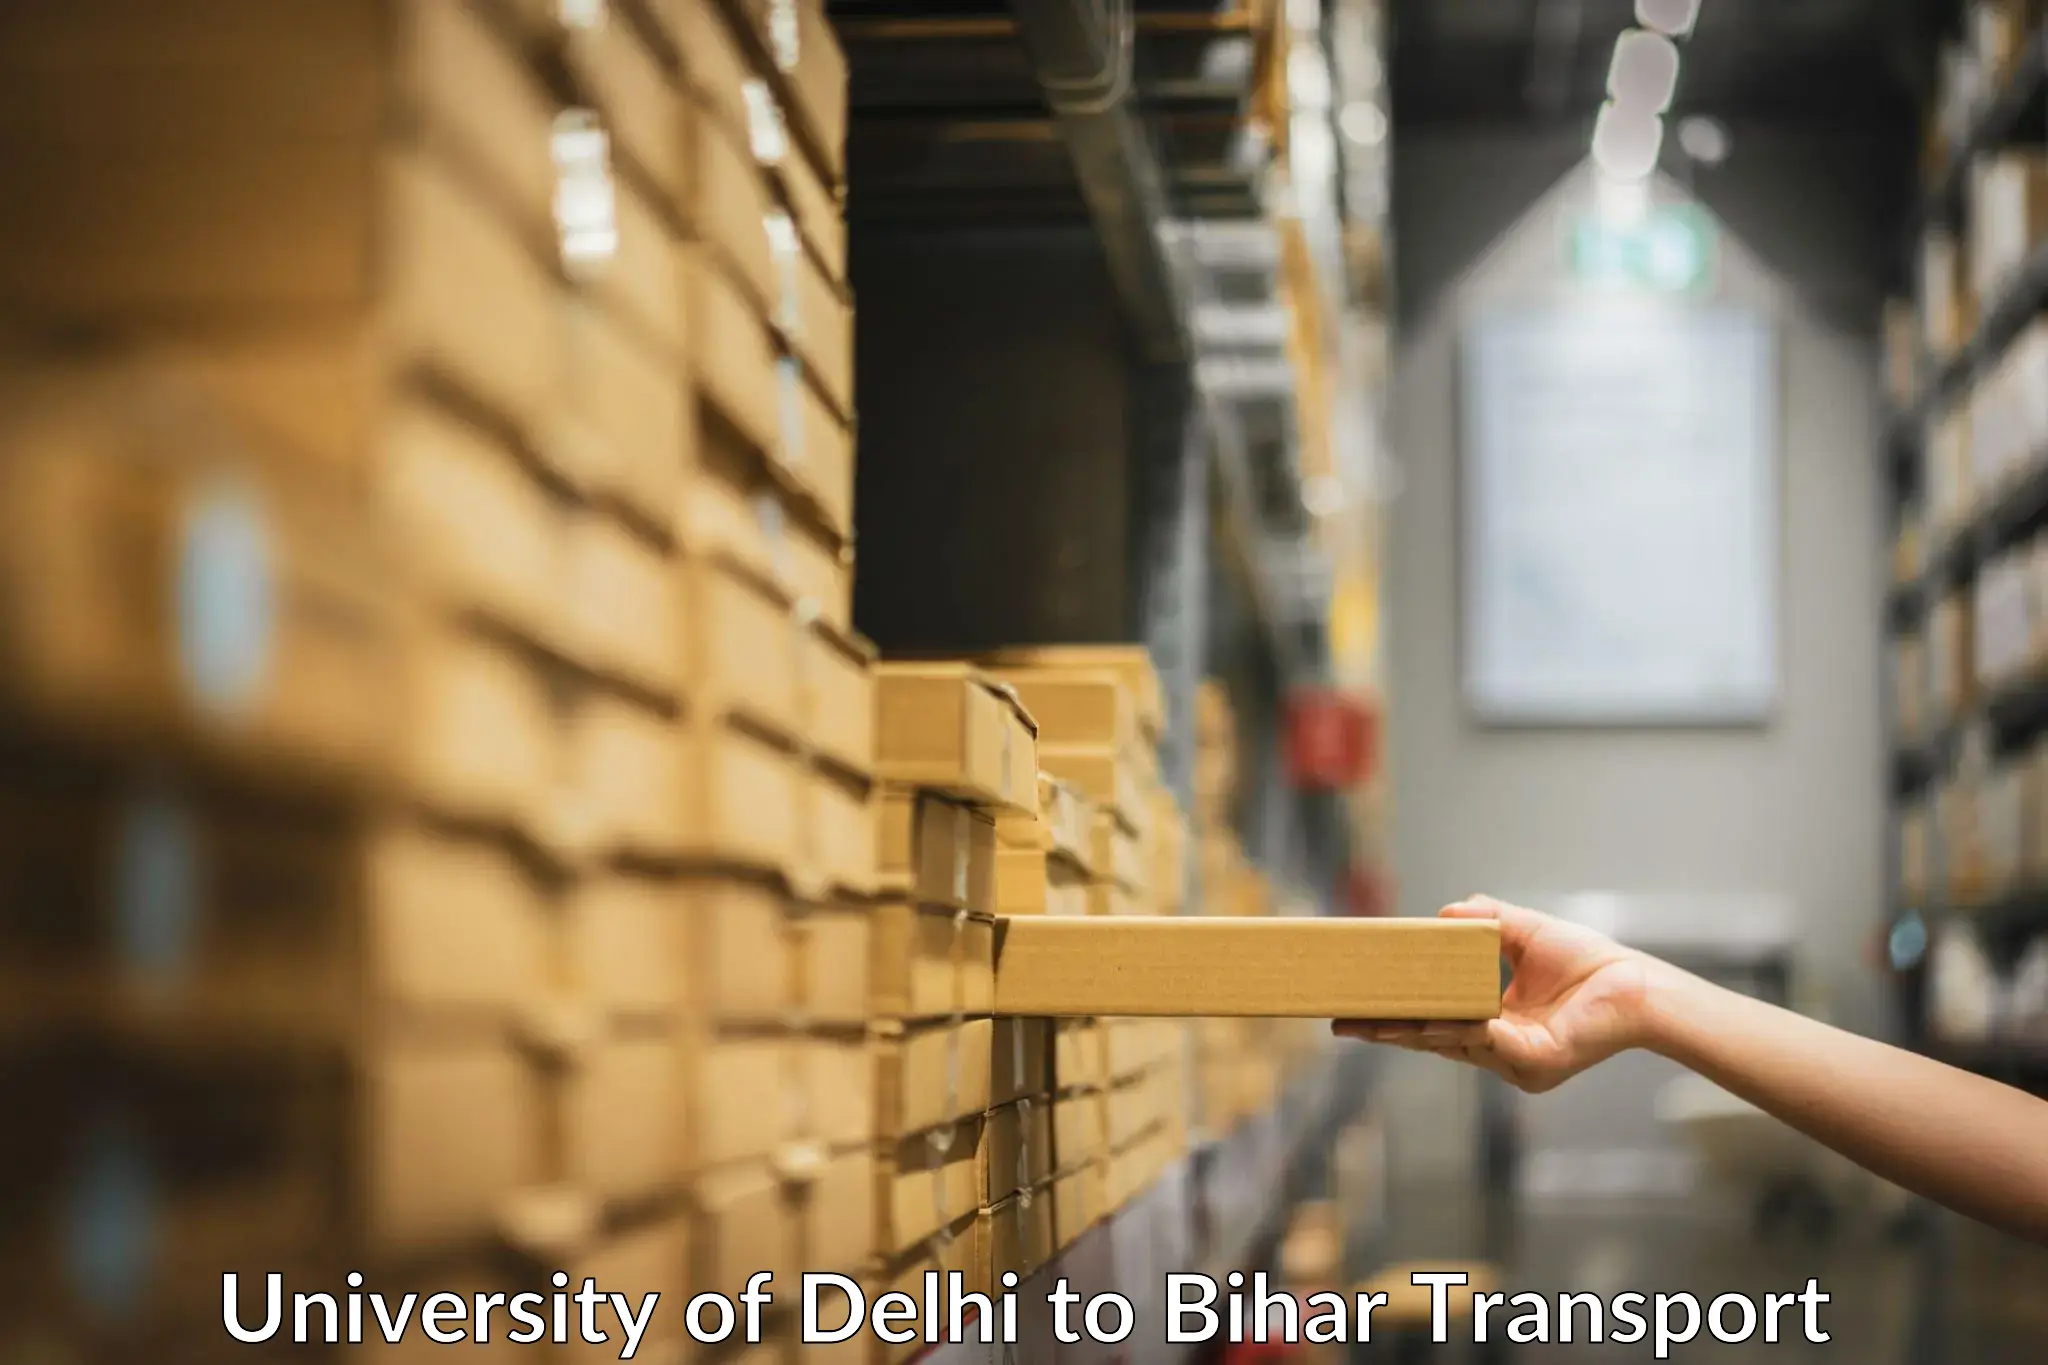 Cargo transportation services in University of Delhi to Bihar Sharif